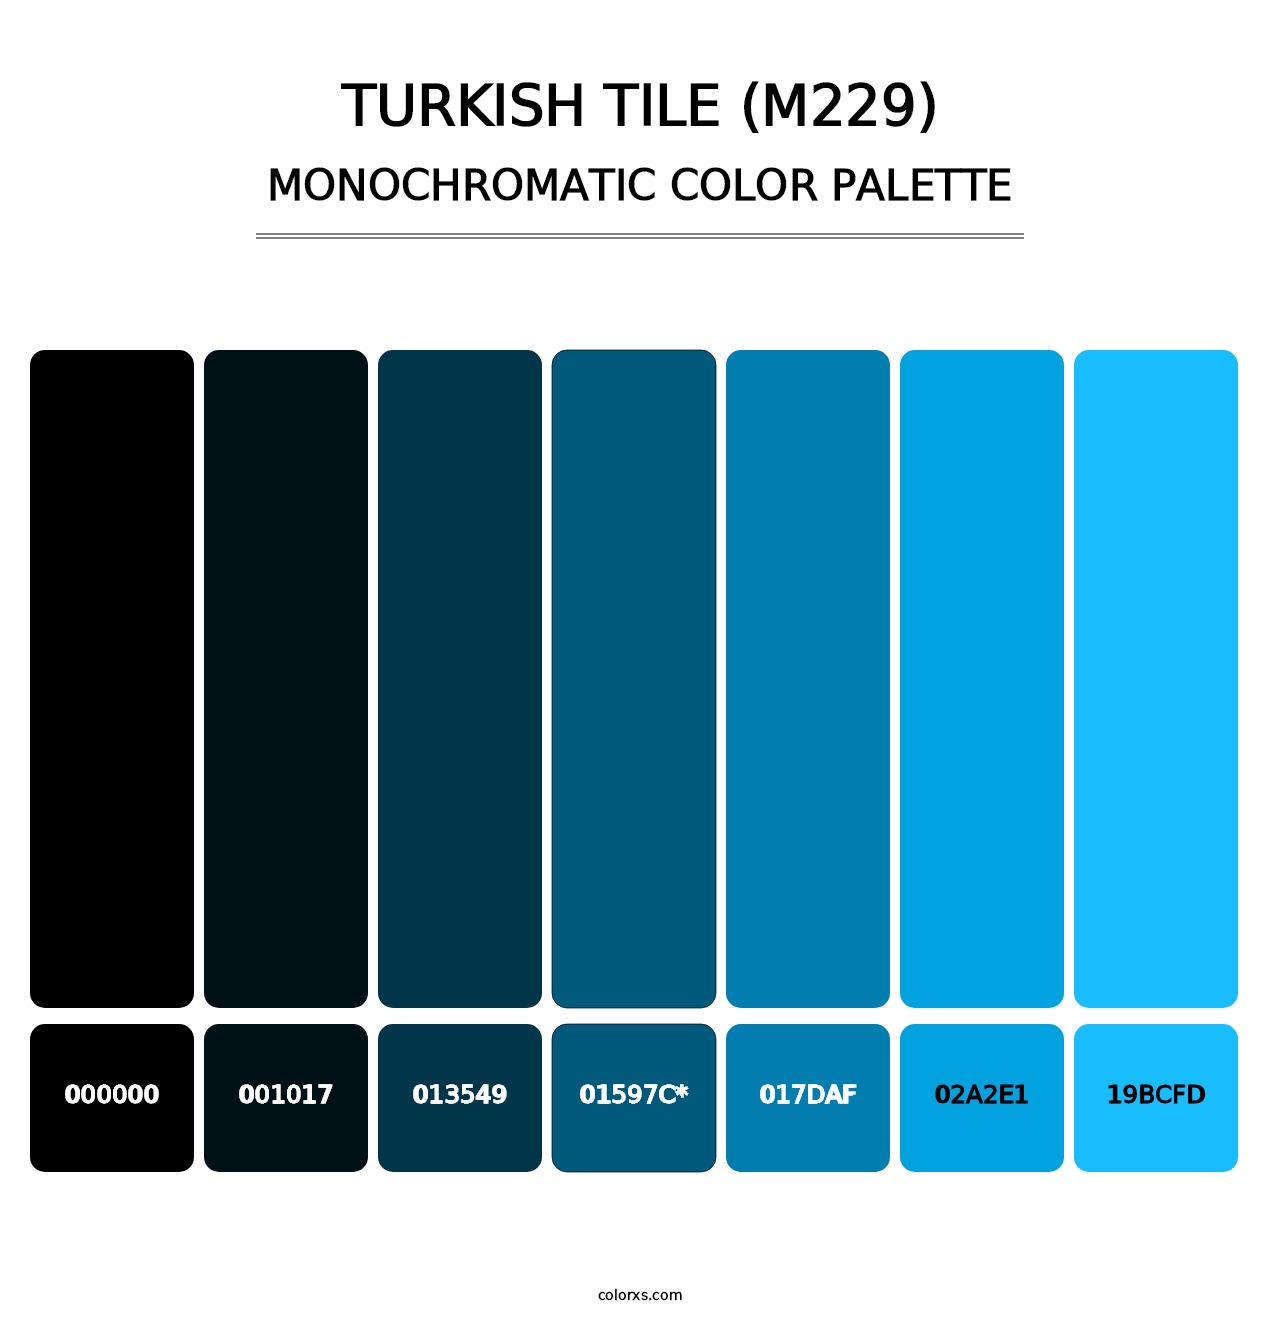 Turkish Tile (M229) - Monochromatic Color Palette